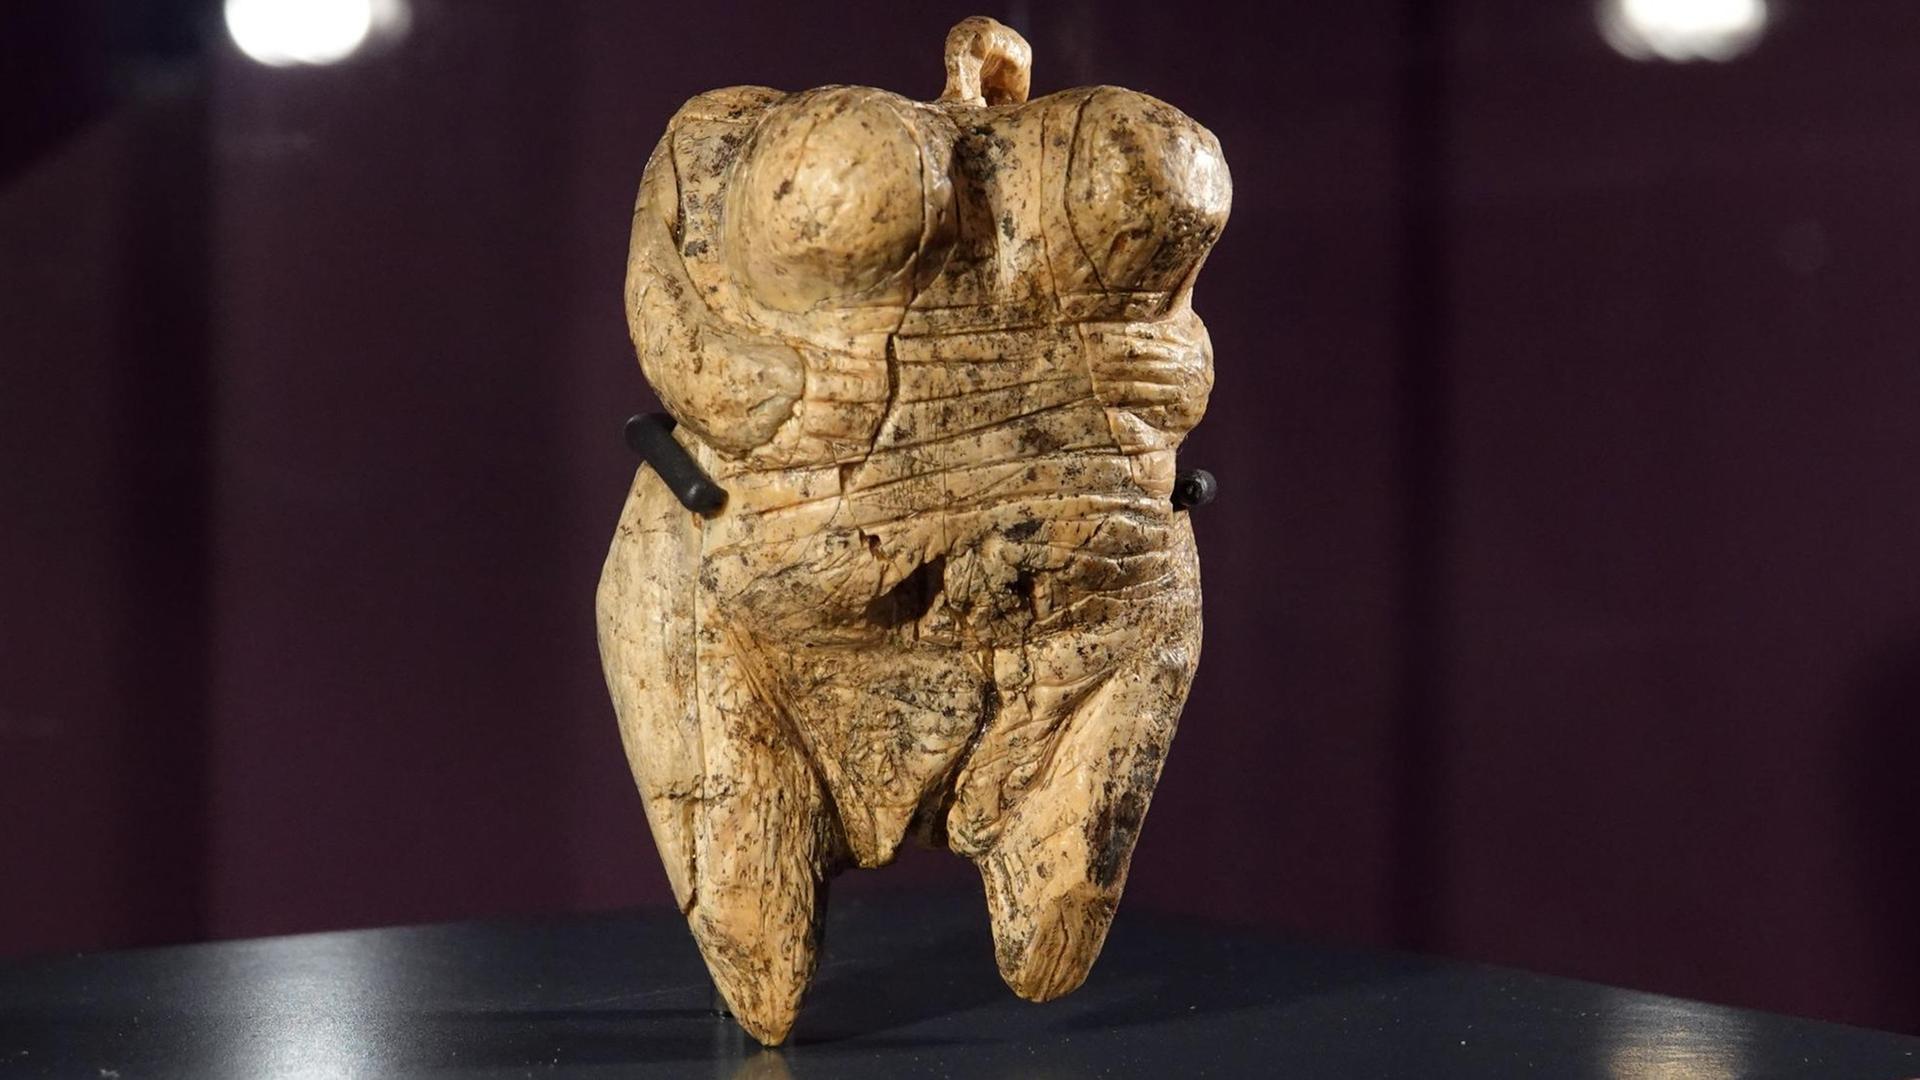 Die ca. 40 000 Jahre alte Venus vom Hohle Fels steht in einer Vitrine in der Ausstellung "Bewegte Zeiten.